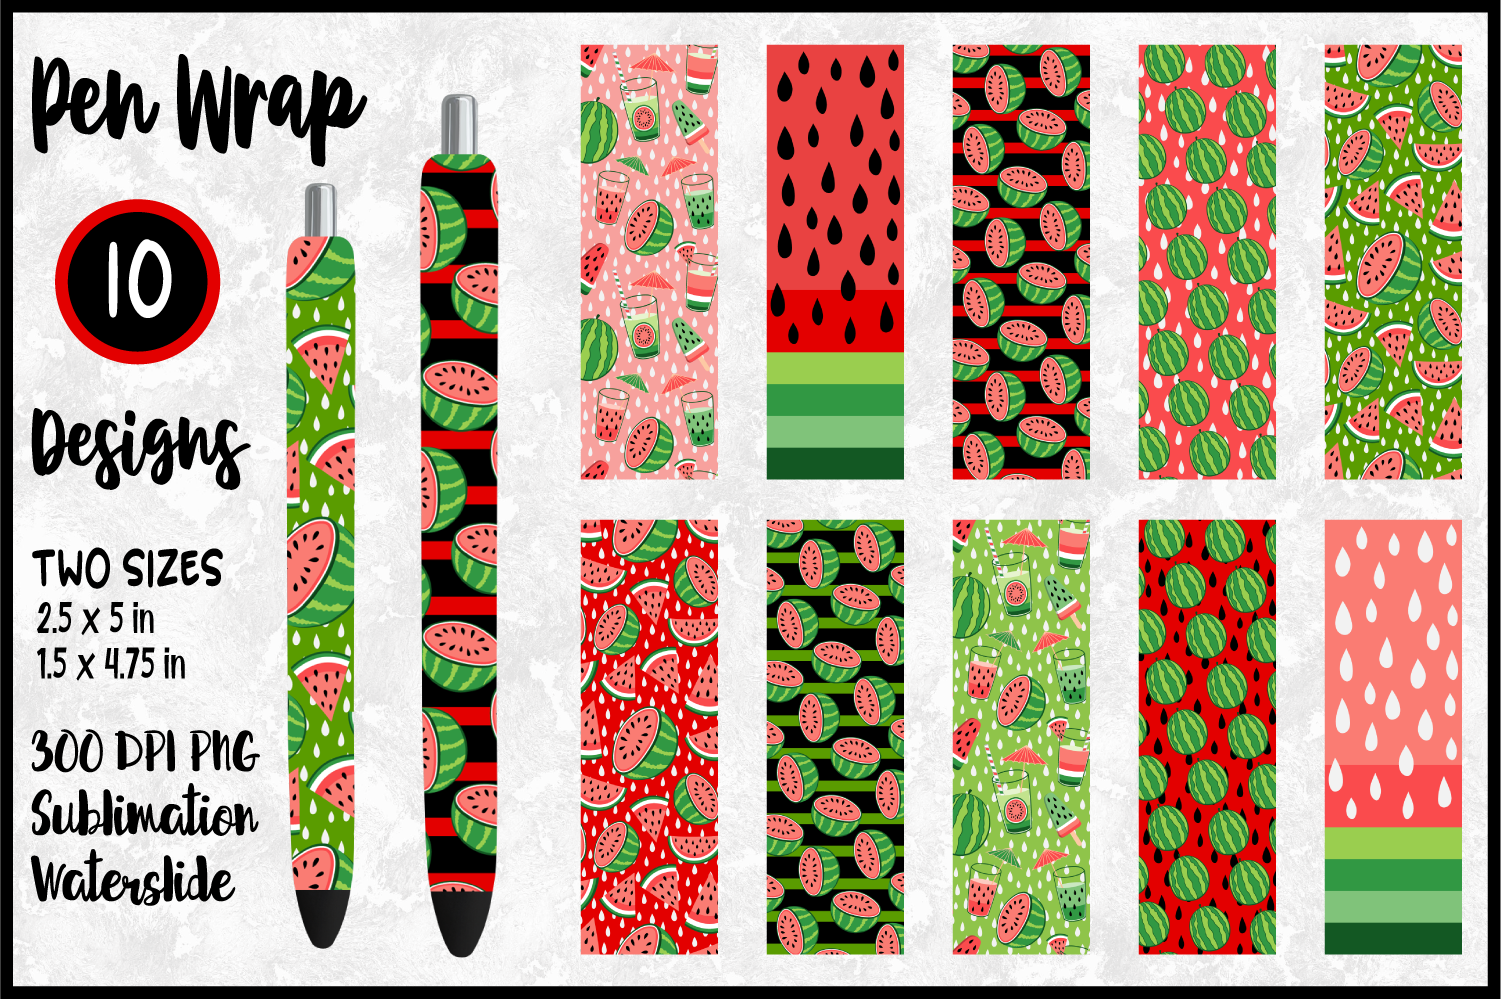 Sublimation pens PNG / Flower Pen Wrap Sublimation